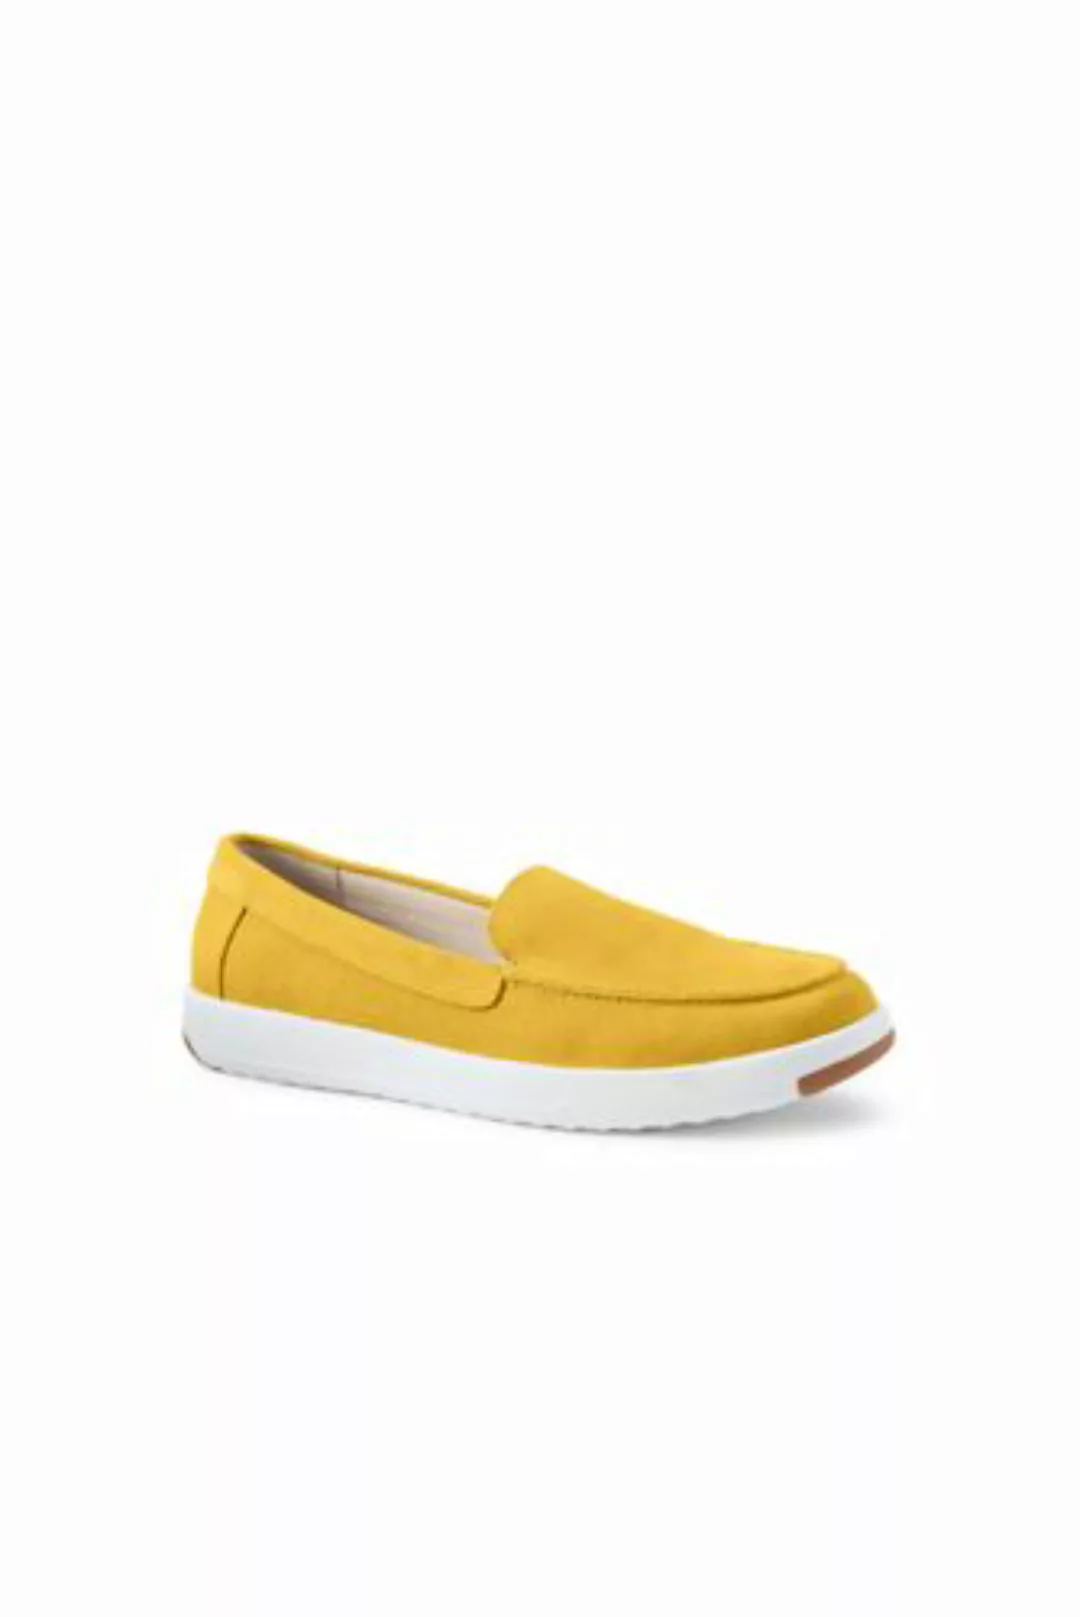 Federleichte Komfort-Loafer, Damen, Größe: 37 Normal, Gelb, Rauleder, by La günstig online kaufen